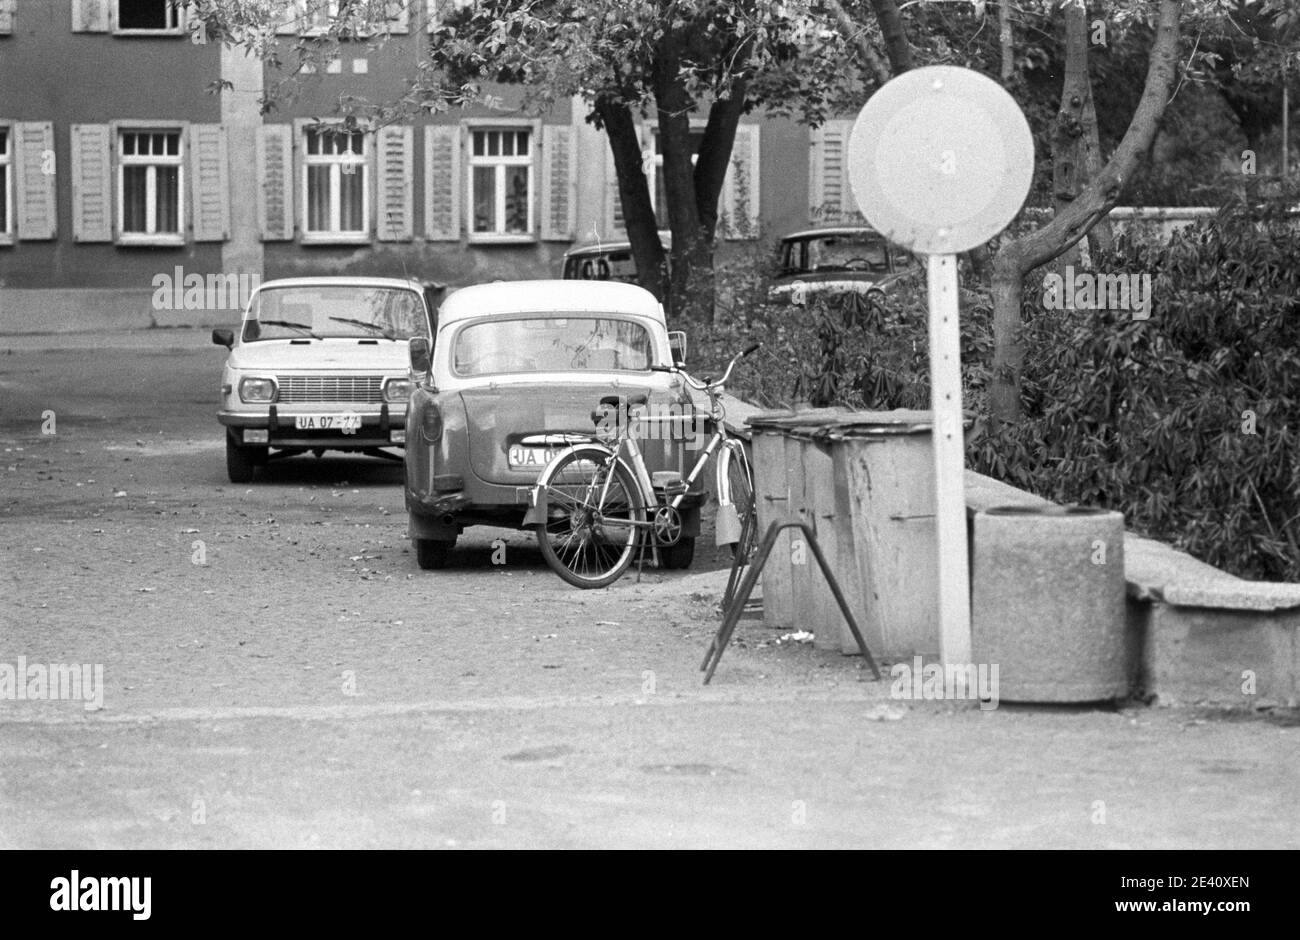 15 settembre 1983, Sassonia, Delitzsch: Un Wartburg, e un Trabant 500 stand dietro il segno divieto per veicoli di tutti i tipi. Scena di strada nel distretto di Delitzsch. Data esatta della registrazione non nota. Foto: Volkmar Heinz/dpa-Zentralbild/ZB Foto Stock